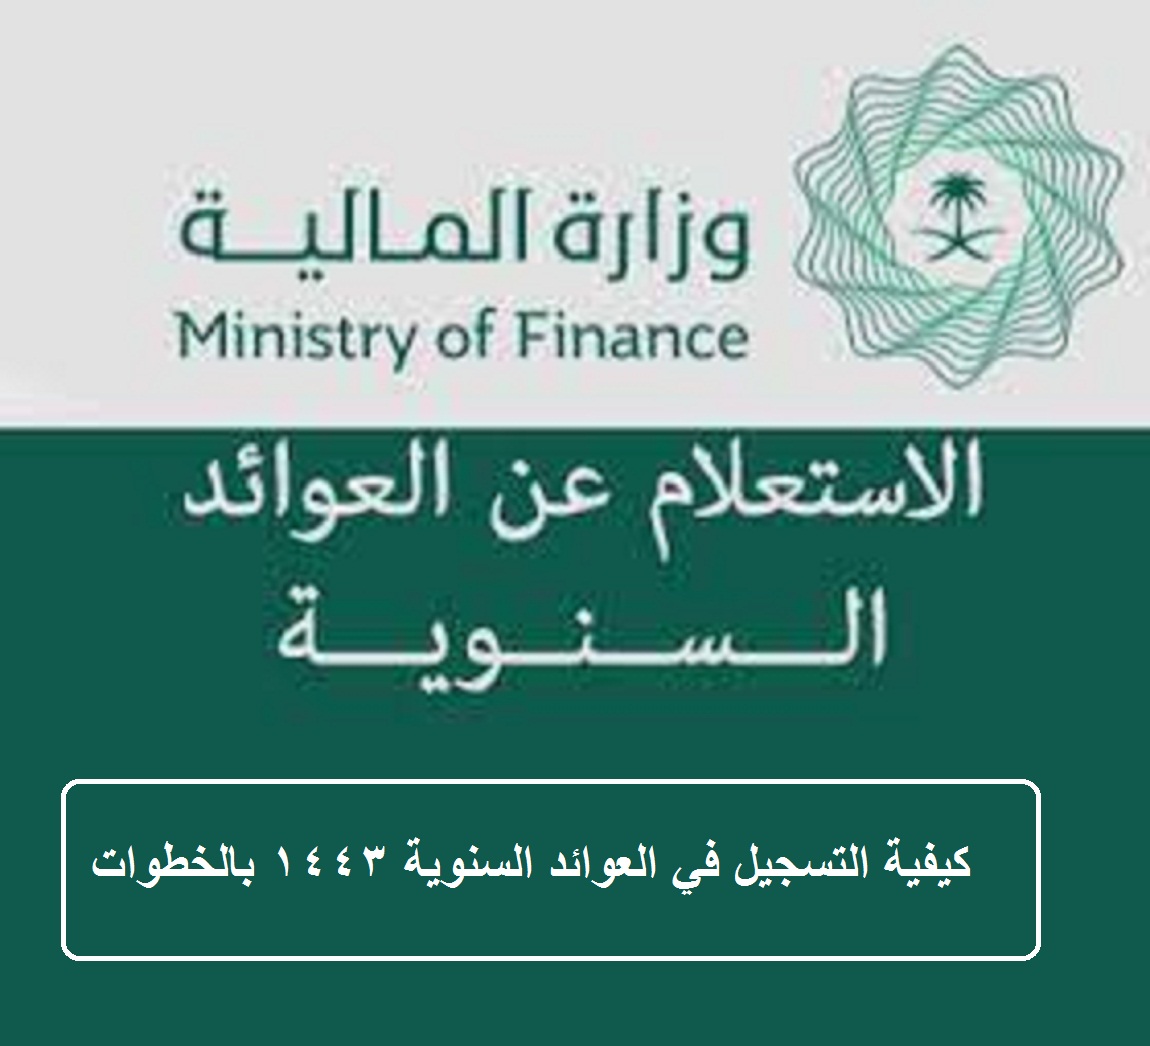 وزارة المالية السعودية وإعلانها موعد نزول العوائد السنوية وإضافة الأبناء بالخطوات